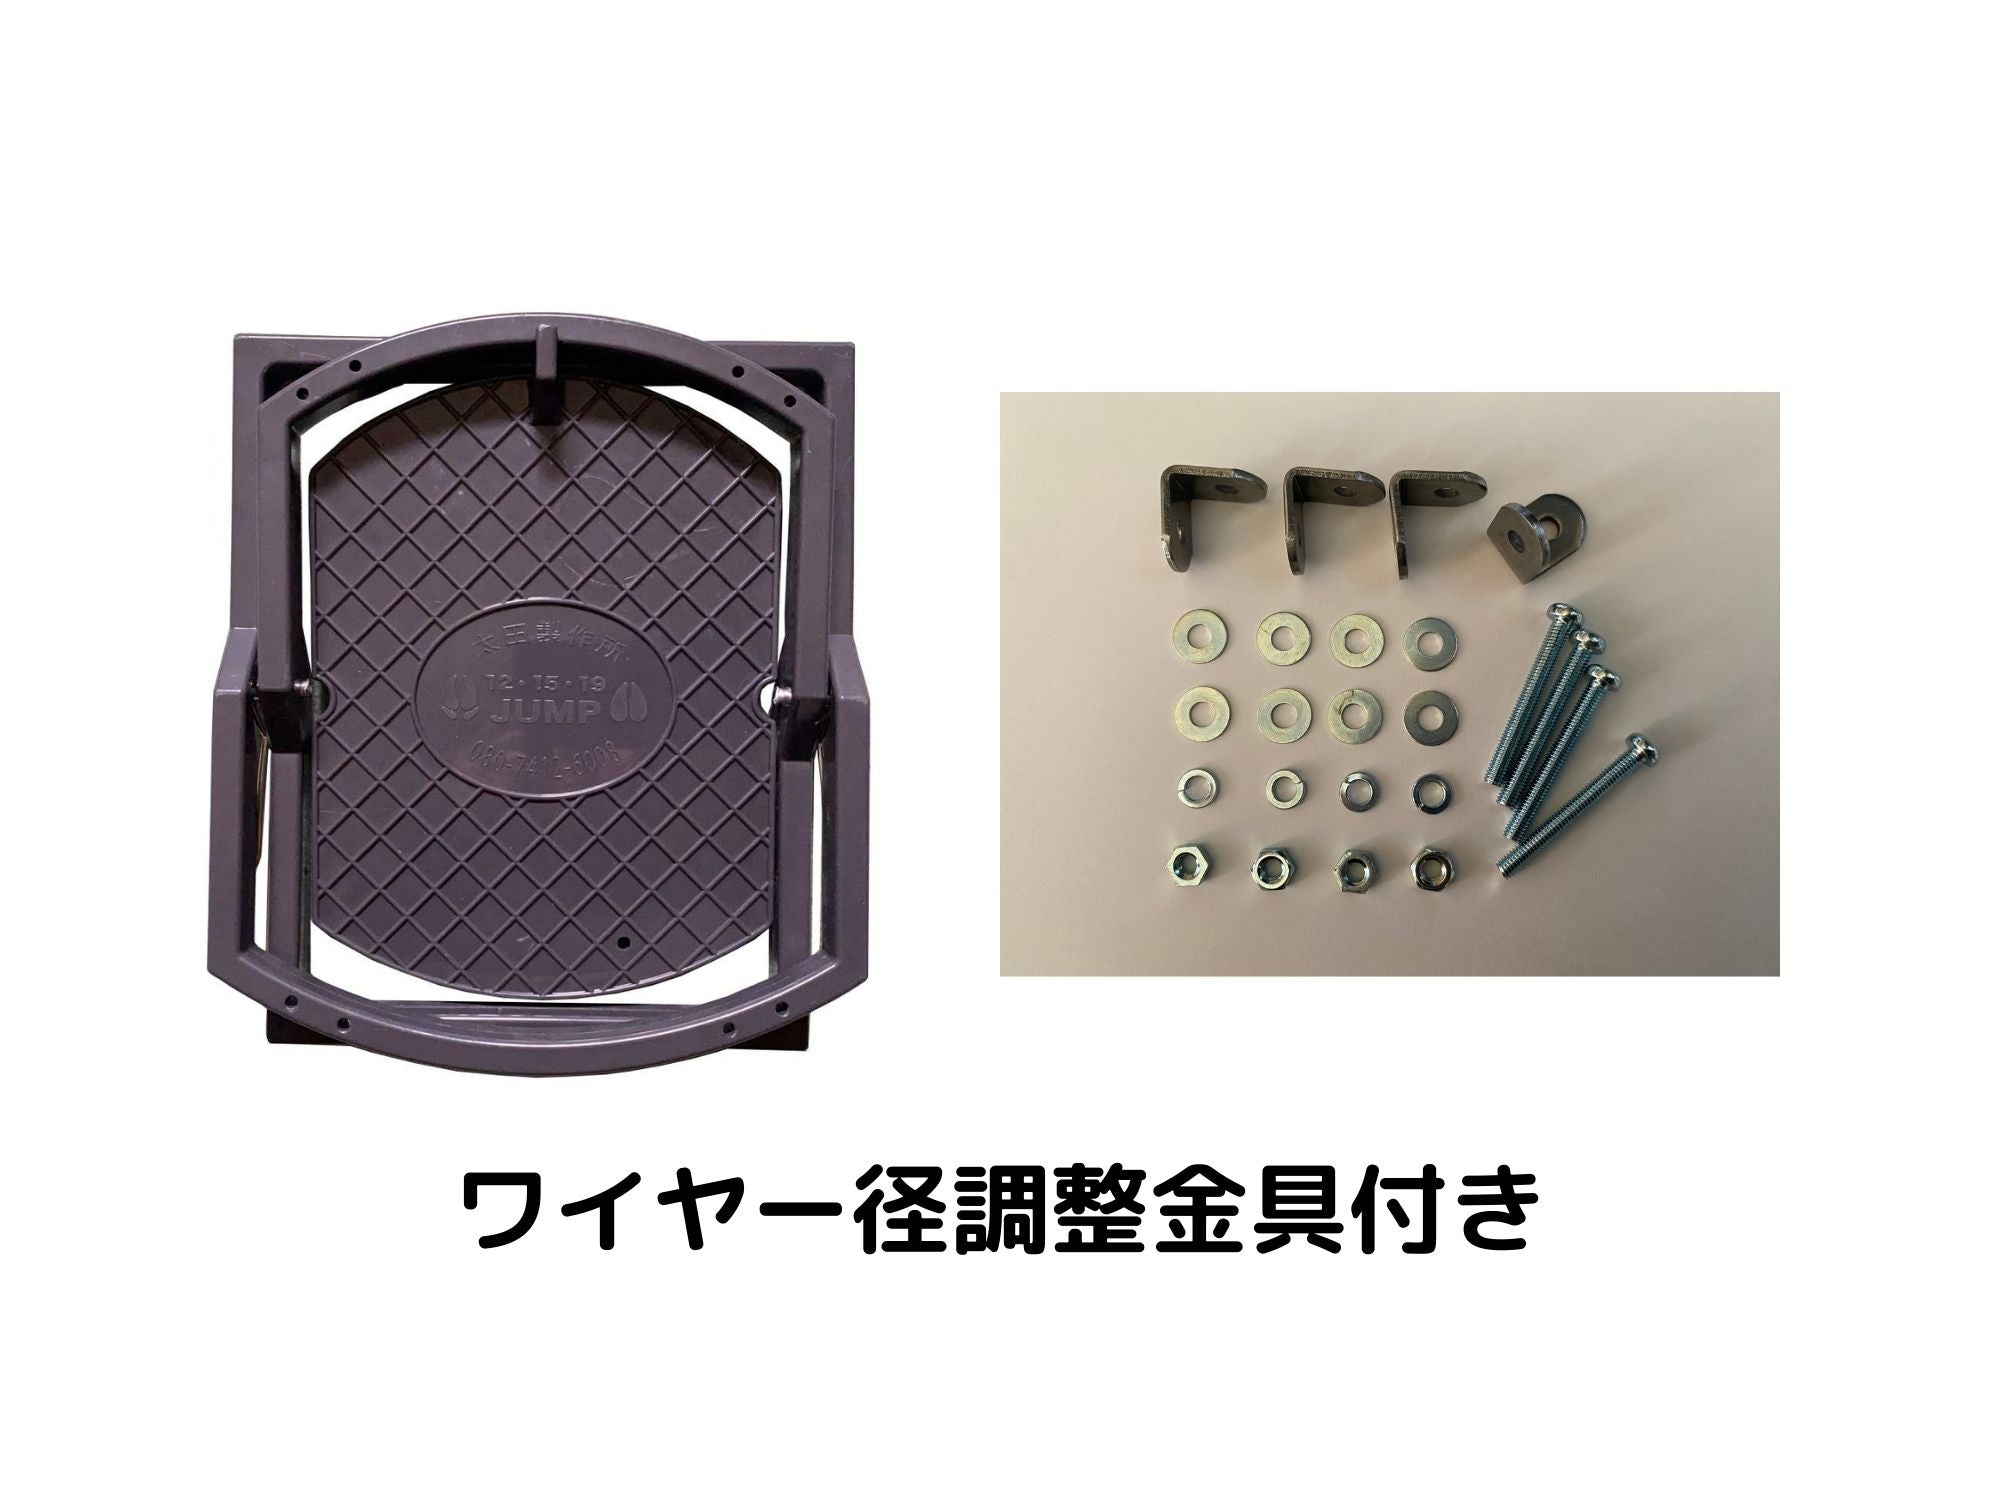 19cmジャンプ踏み板(台座付き) ワイヤー径調整用金具付きセット 太田